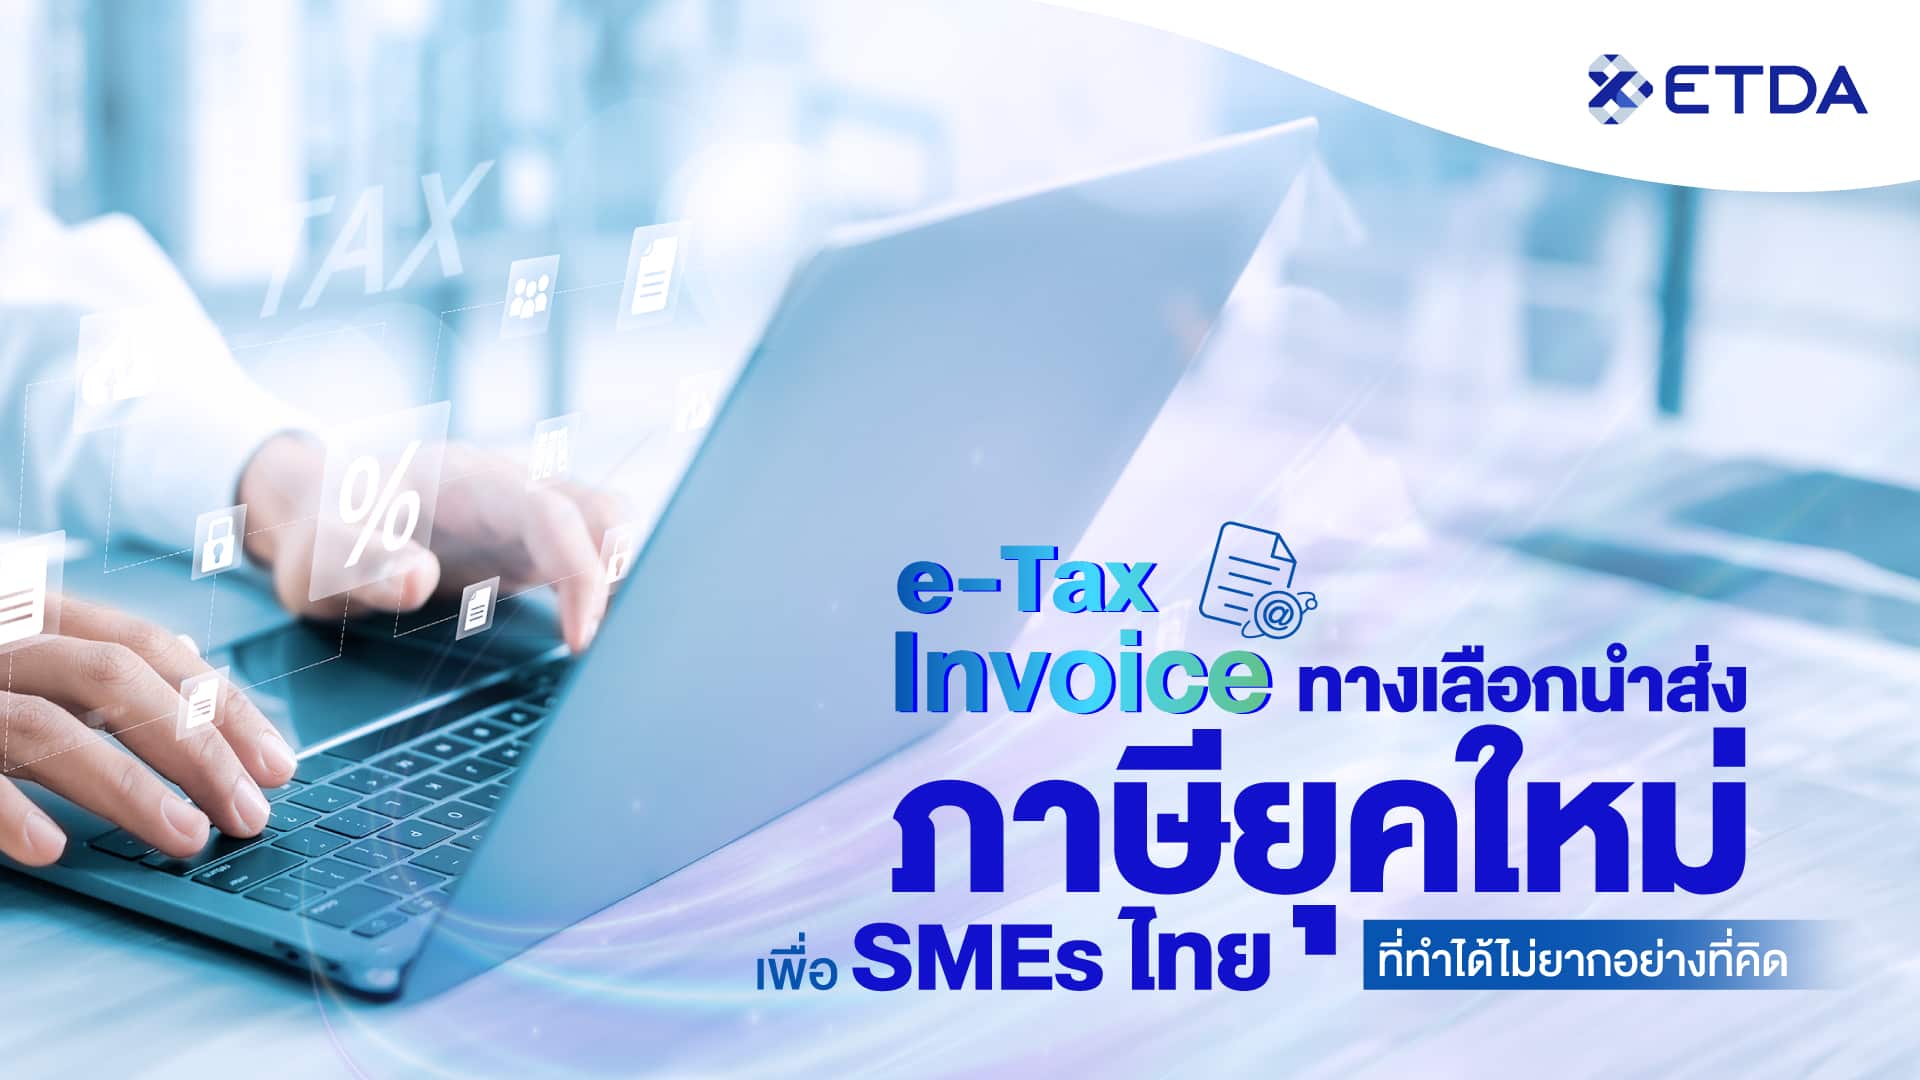 ‘e-Tax Invoice’ ทางเลือกนำส่งภาษียุคใหม่  เพื่อ SMEs ไทย ที่ไม่ได้ทำยากอย่างที่คิด 